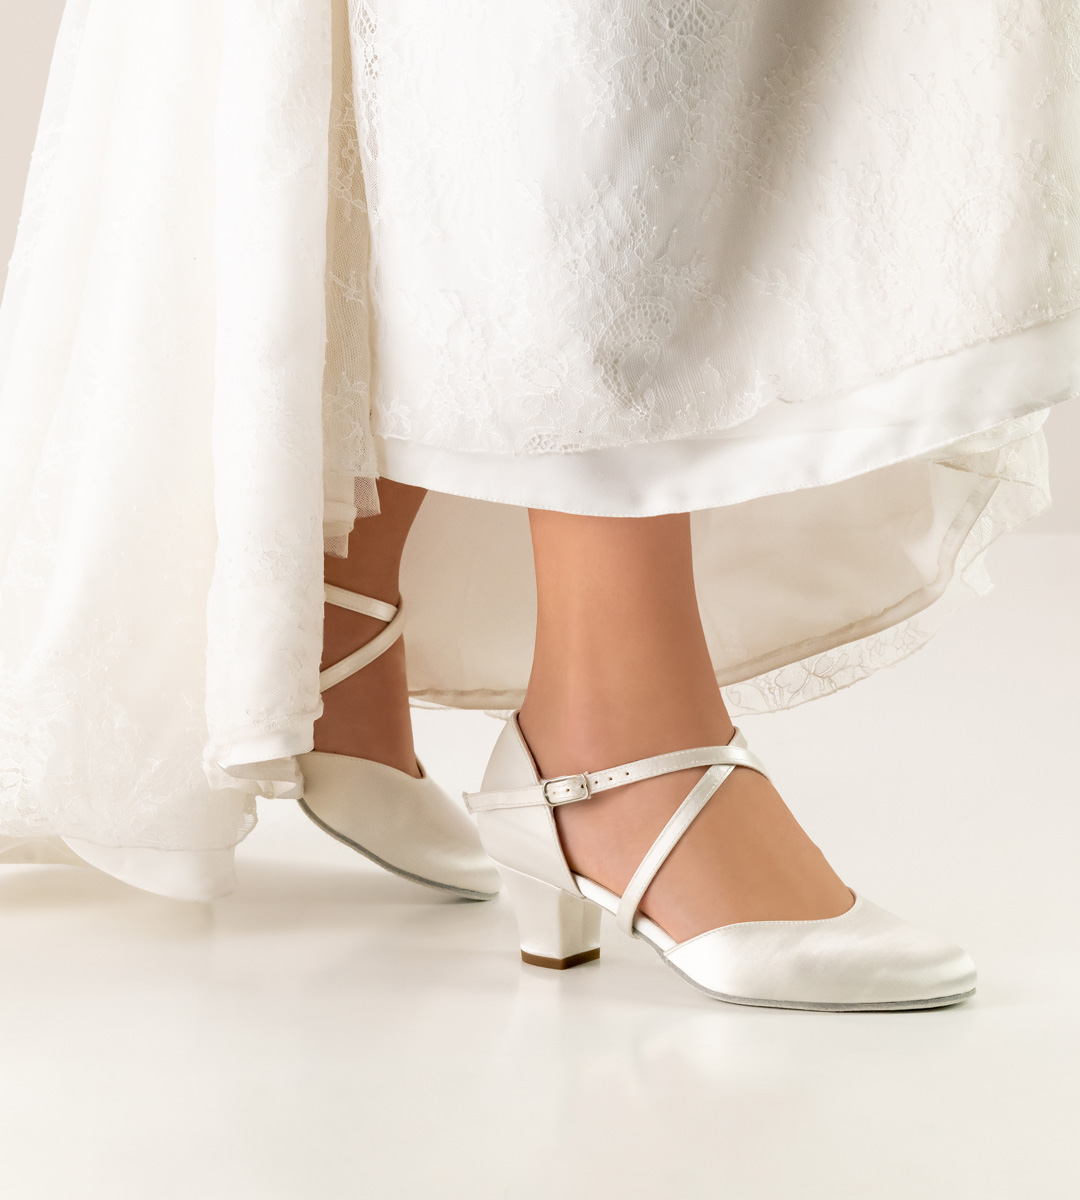 Chaussure de mariée Werner Kern de 4,5 cm de hauteur en satin blanc